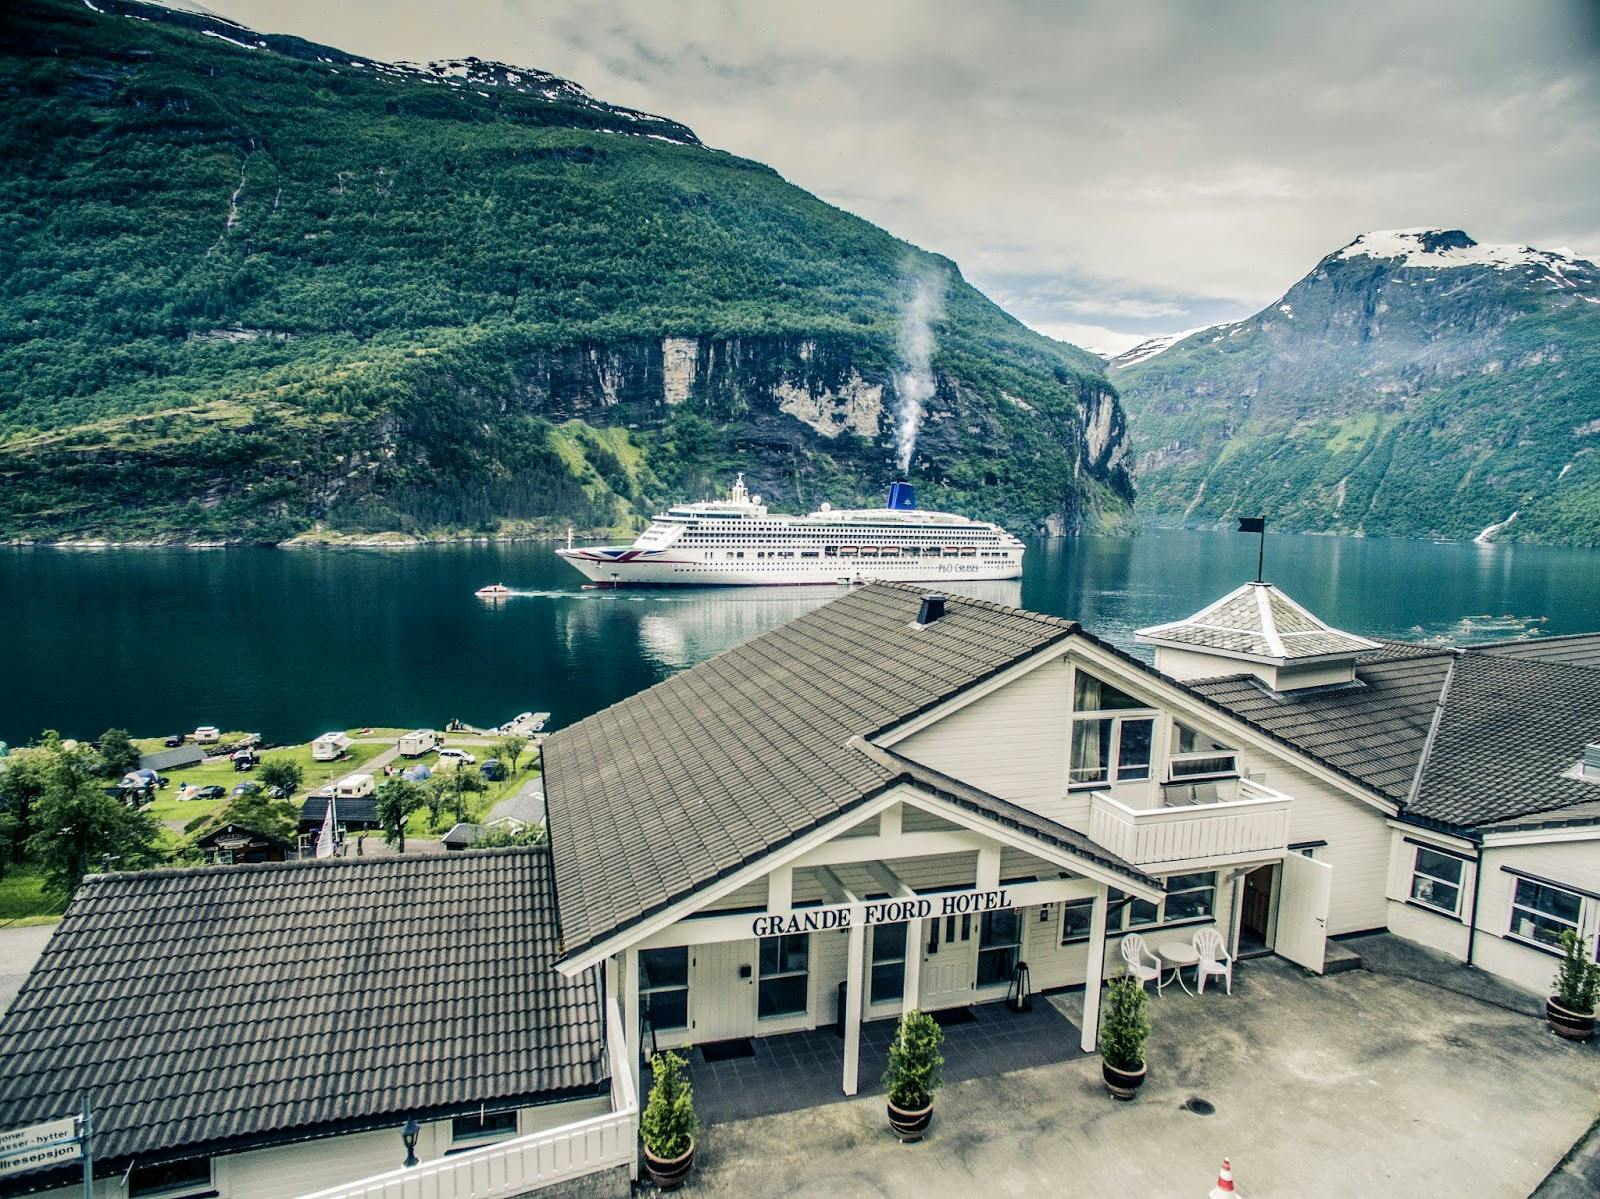 Image - Grande Fjord Hotel